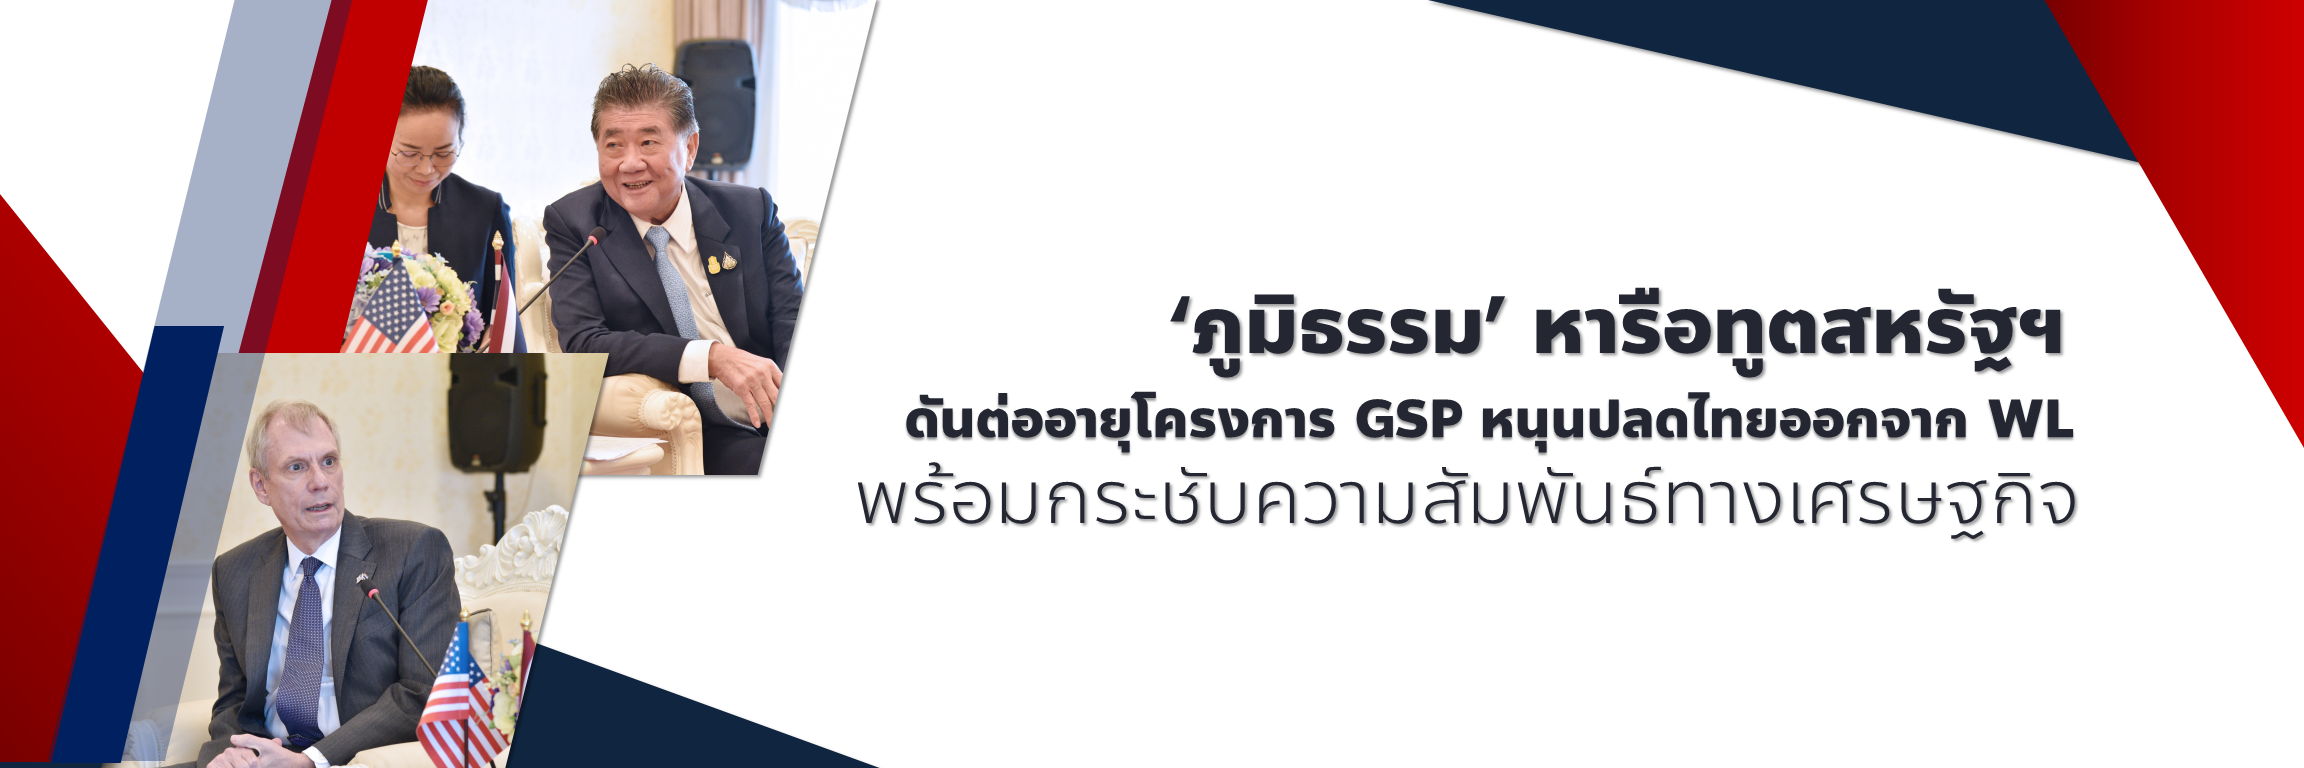 ‘ภูมิธรรม’ หารือทูตสหรัฐฯ ดันต่ออายุโครงการ GSP หนุนปลดไทยออกจาก WL พร้อมกระชับความสัมพันธ์ทางเศรษฐกิจ